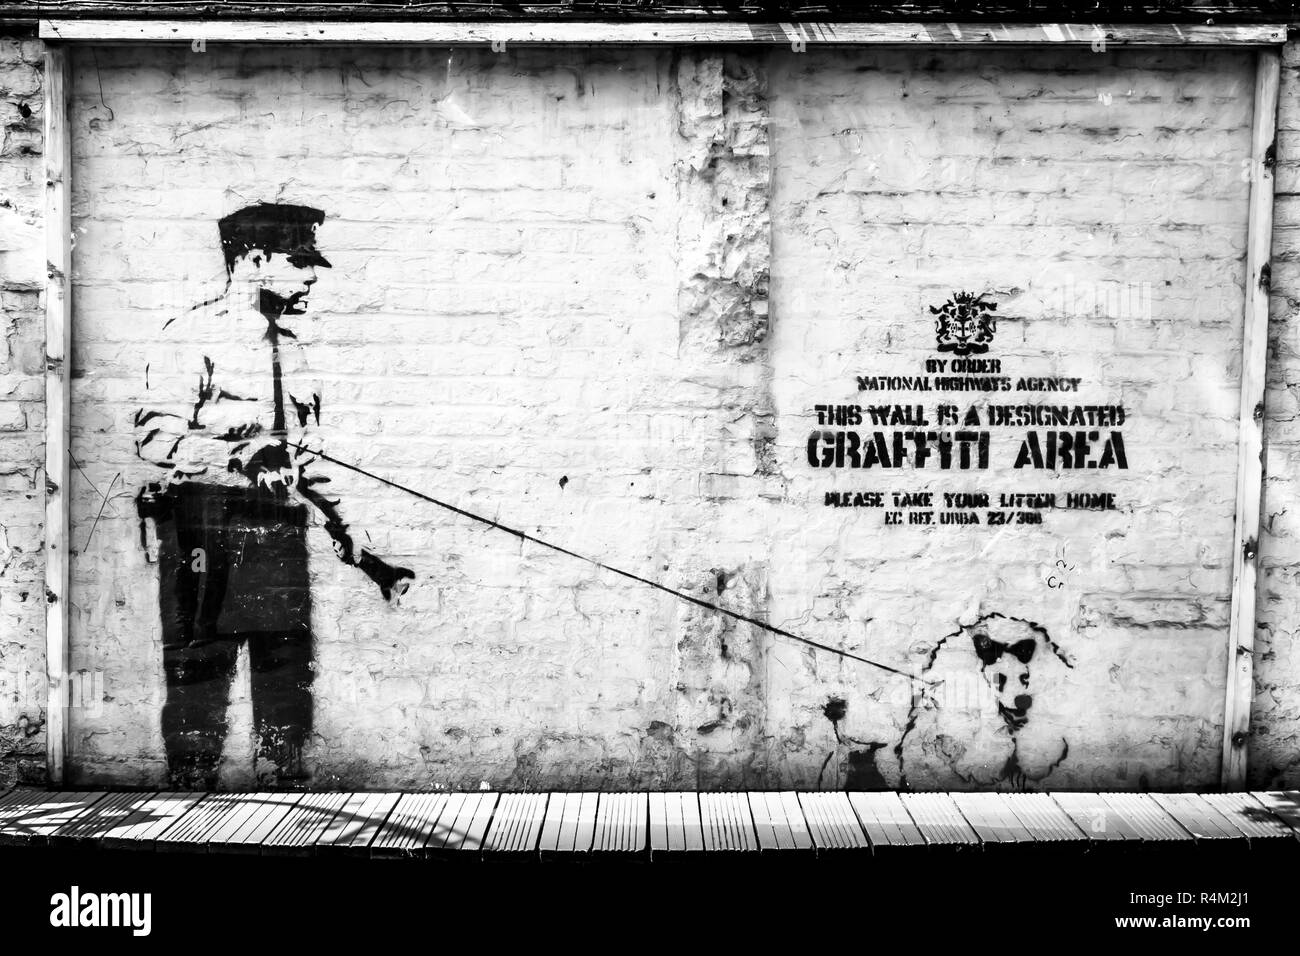 Banksy Street Art en Londres. Por Orden Agencia Nacional de Carreteras. Se trata de un área de Graffiti designada. Por favor lleve su basura a casa Foto de stock